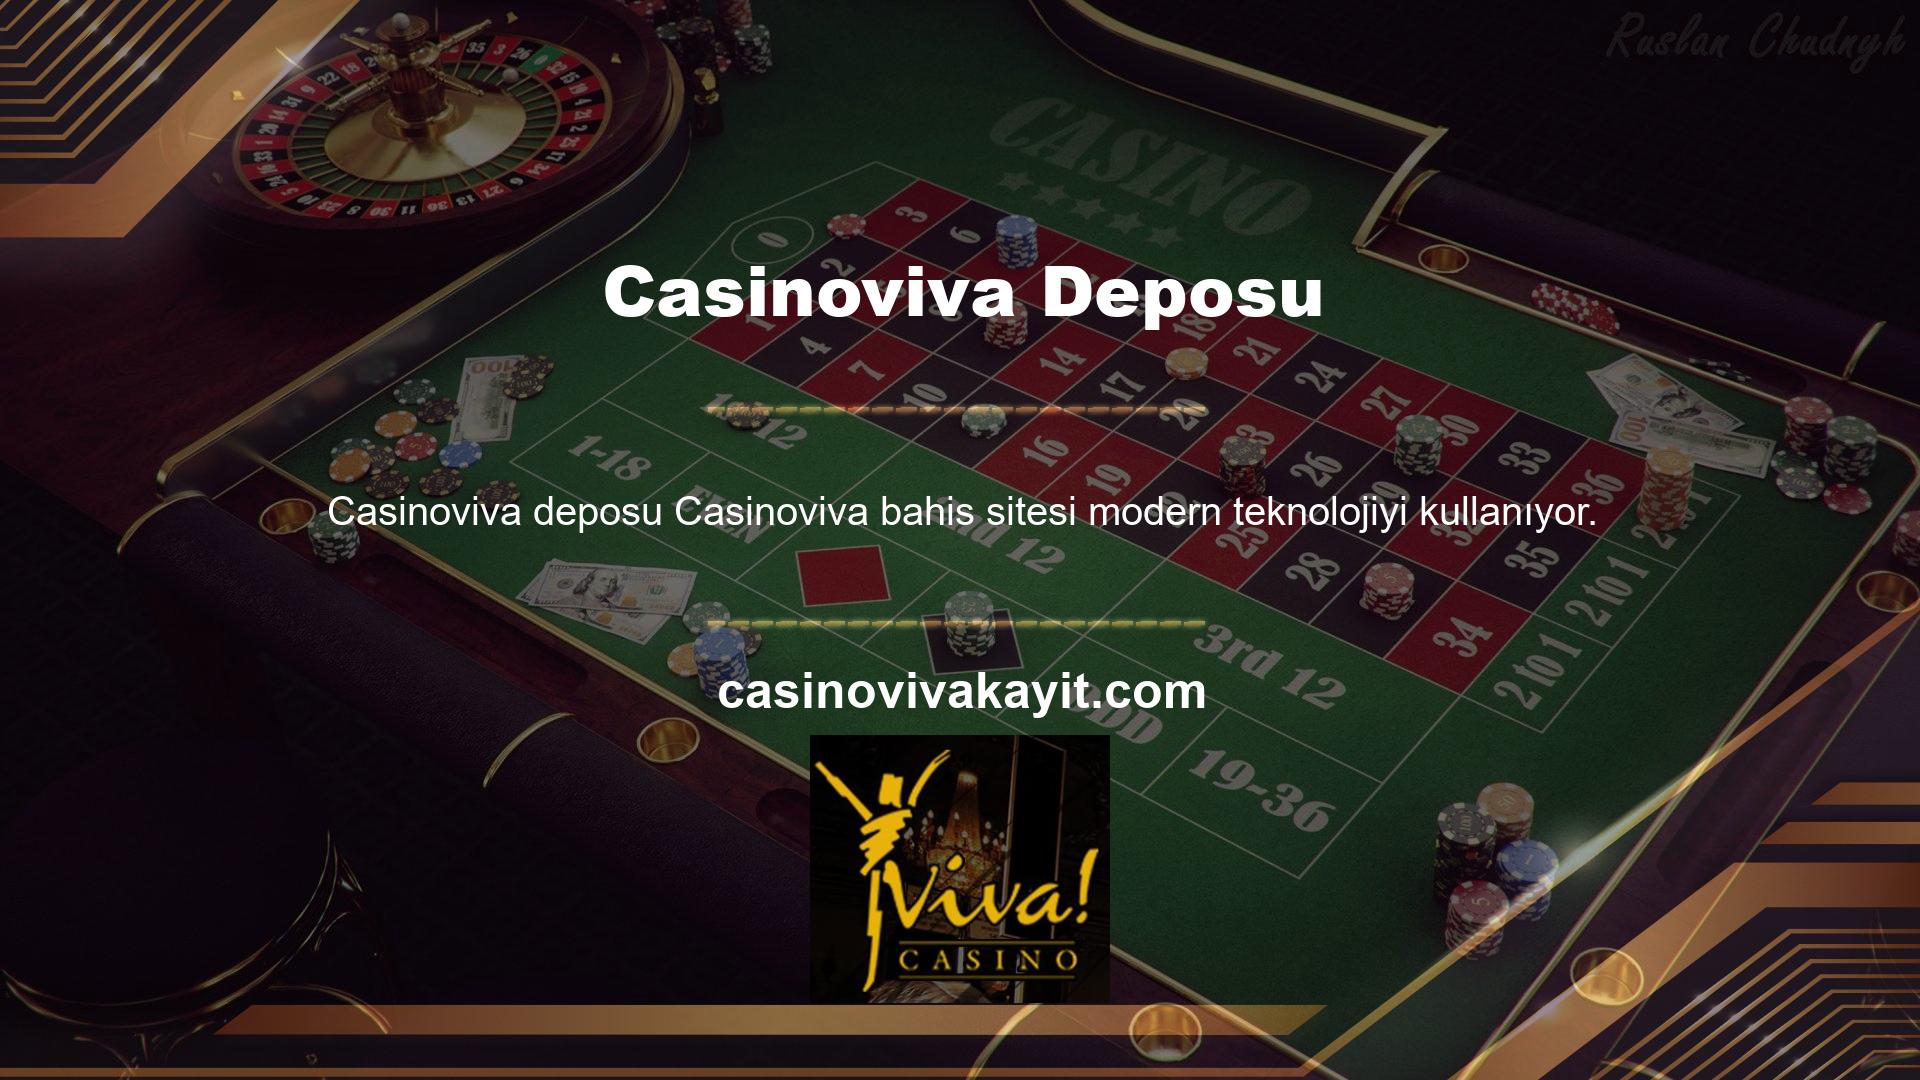 Casino, sektörde en iyi uygulama sağlayıcısı olarak tanınan oyunları da dahil olmak üzere çok çeşitli casino oyunları sunmaktadır